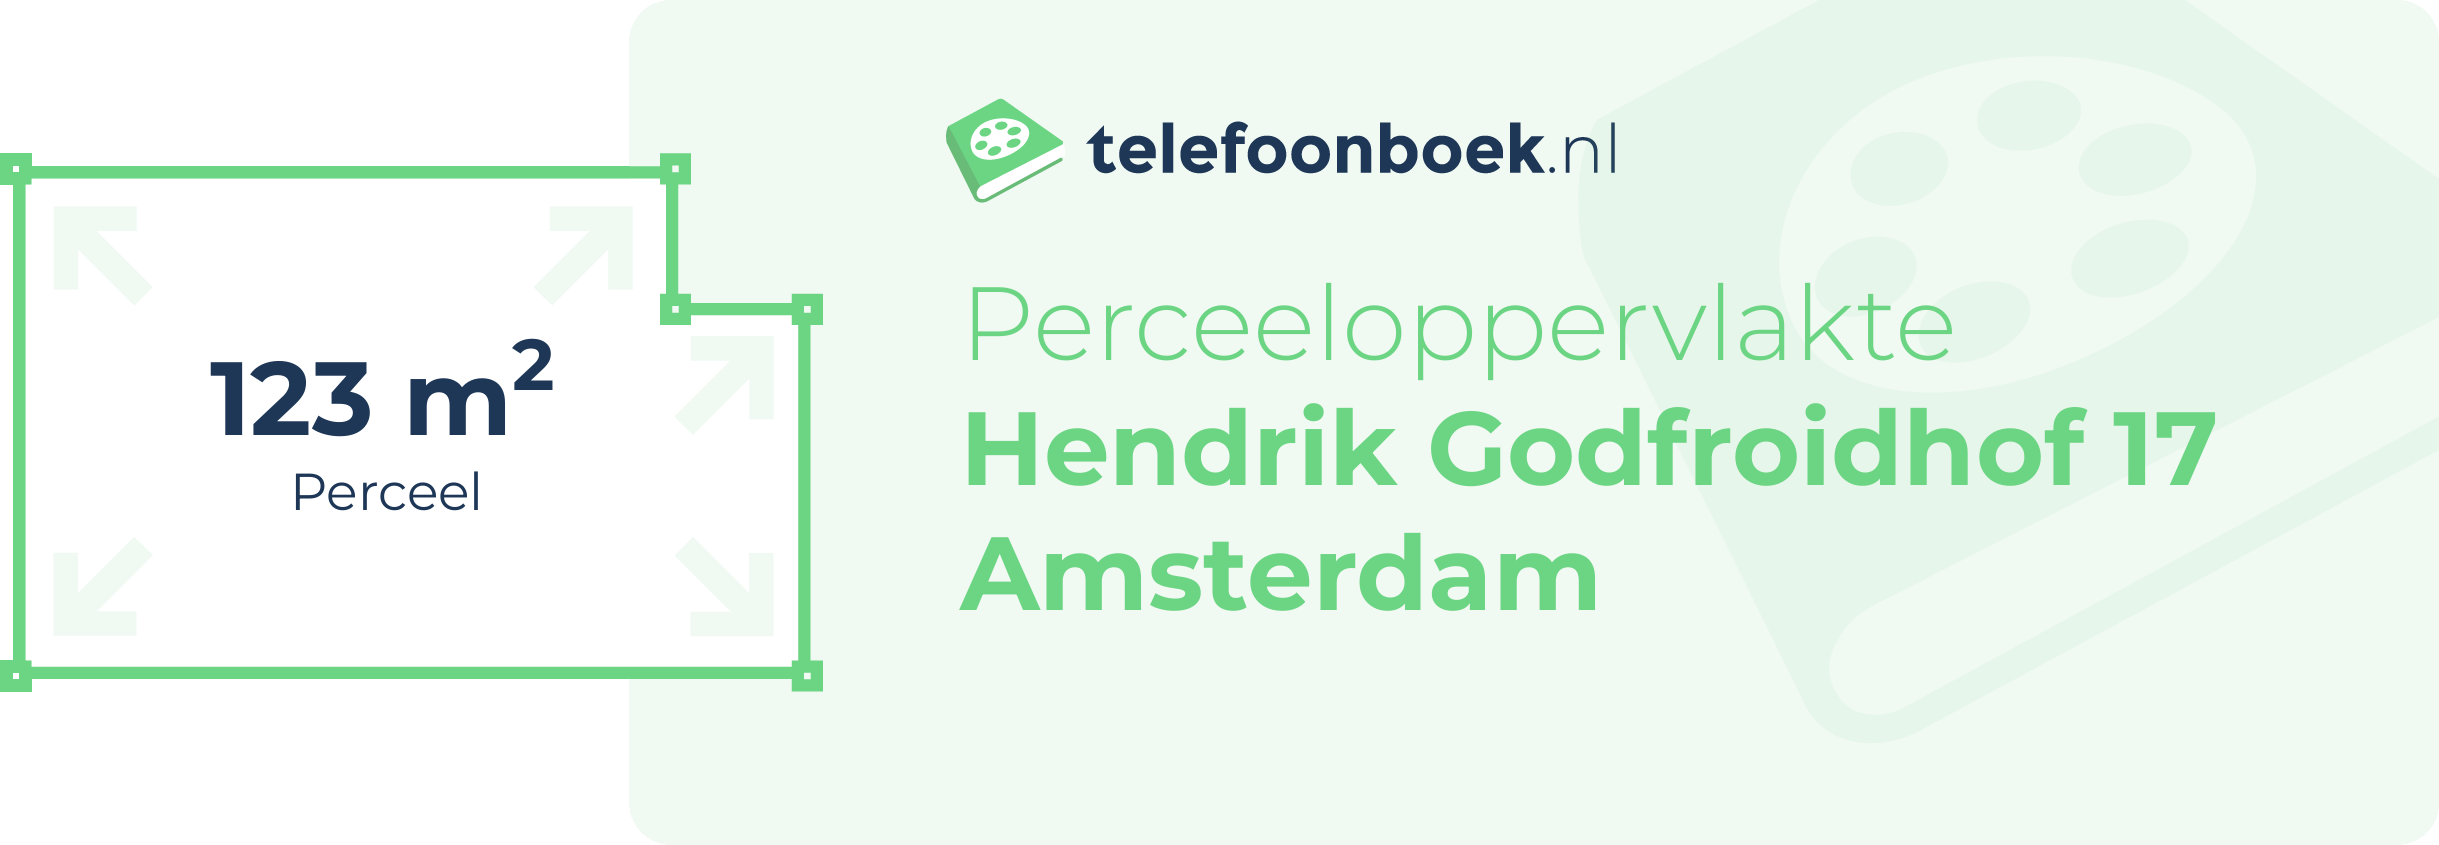 Perceeloppervlakte Hendrik Godfroidhof 17 Amsterdam